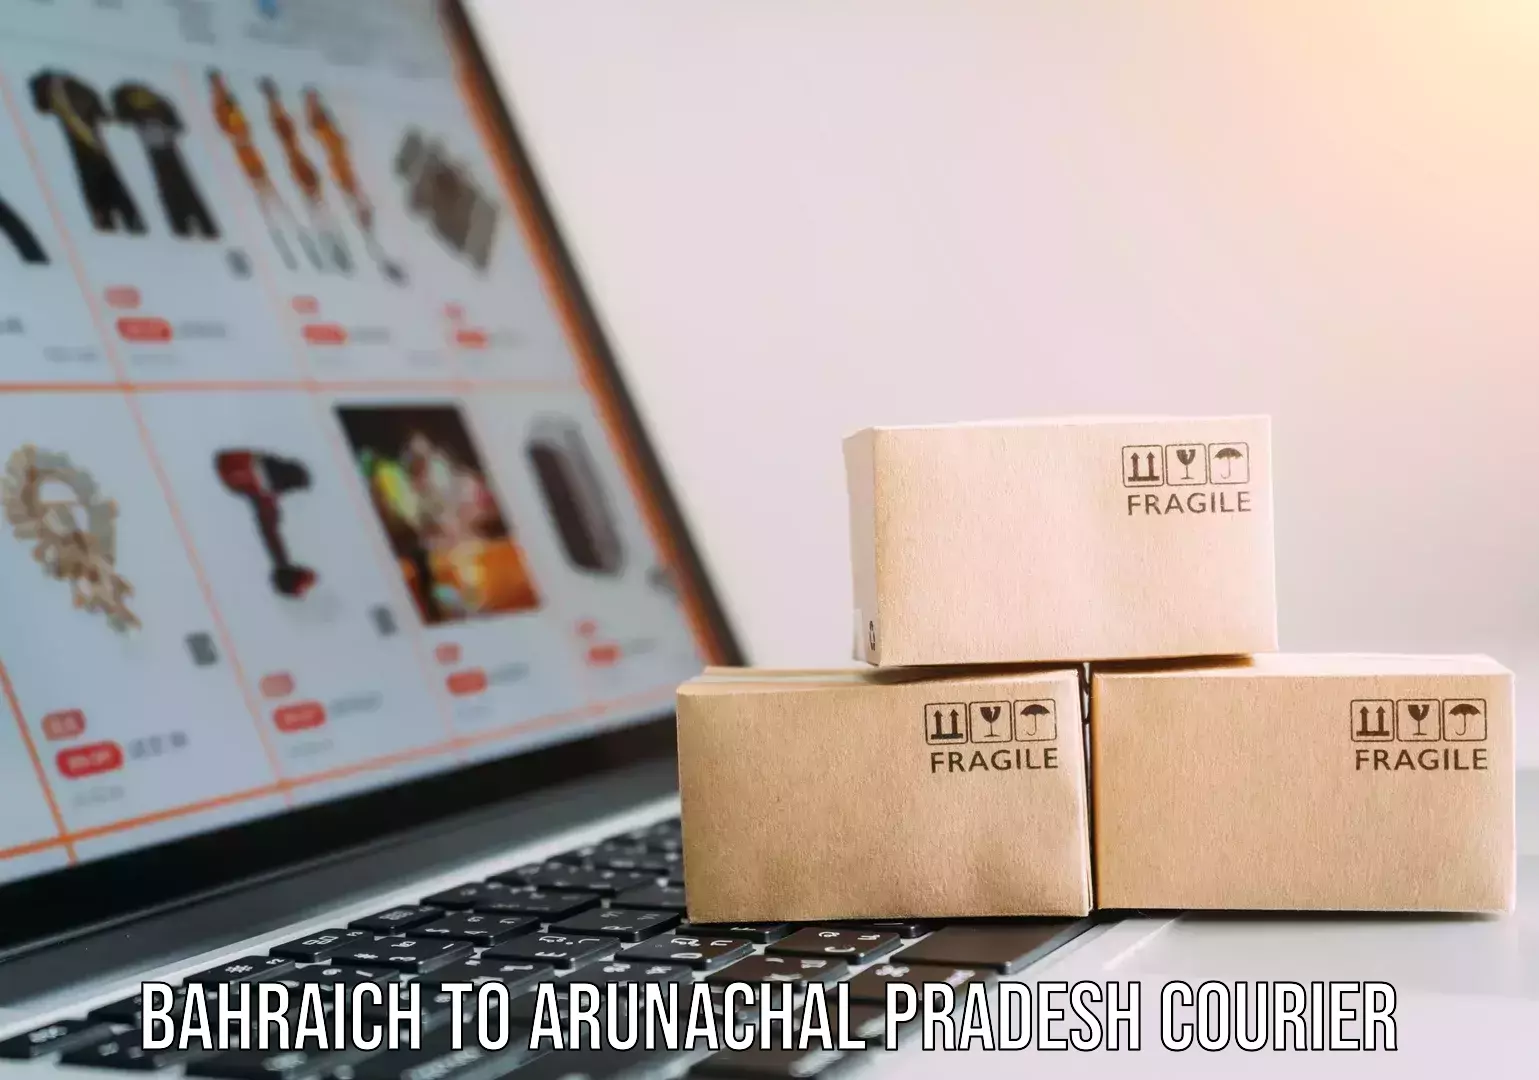 Professional courier services Bahraich to Arunachal Pradesh